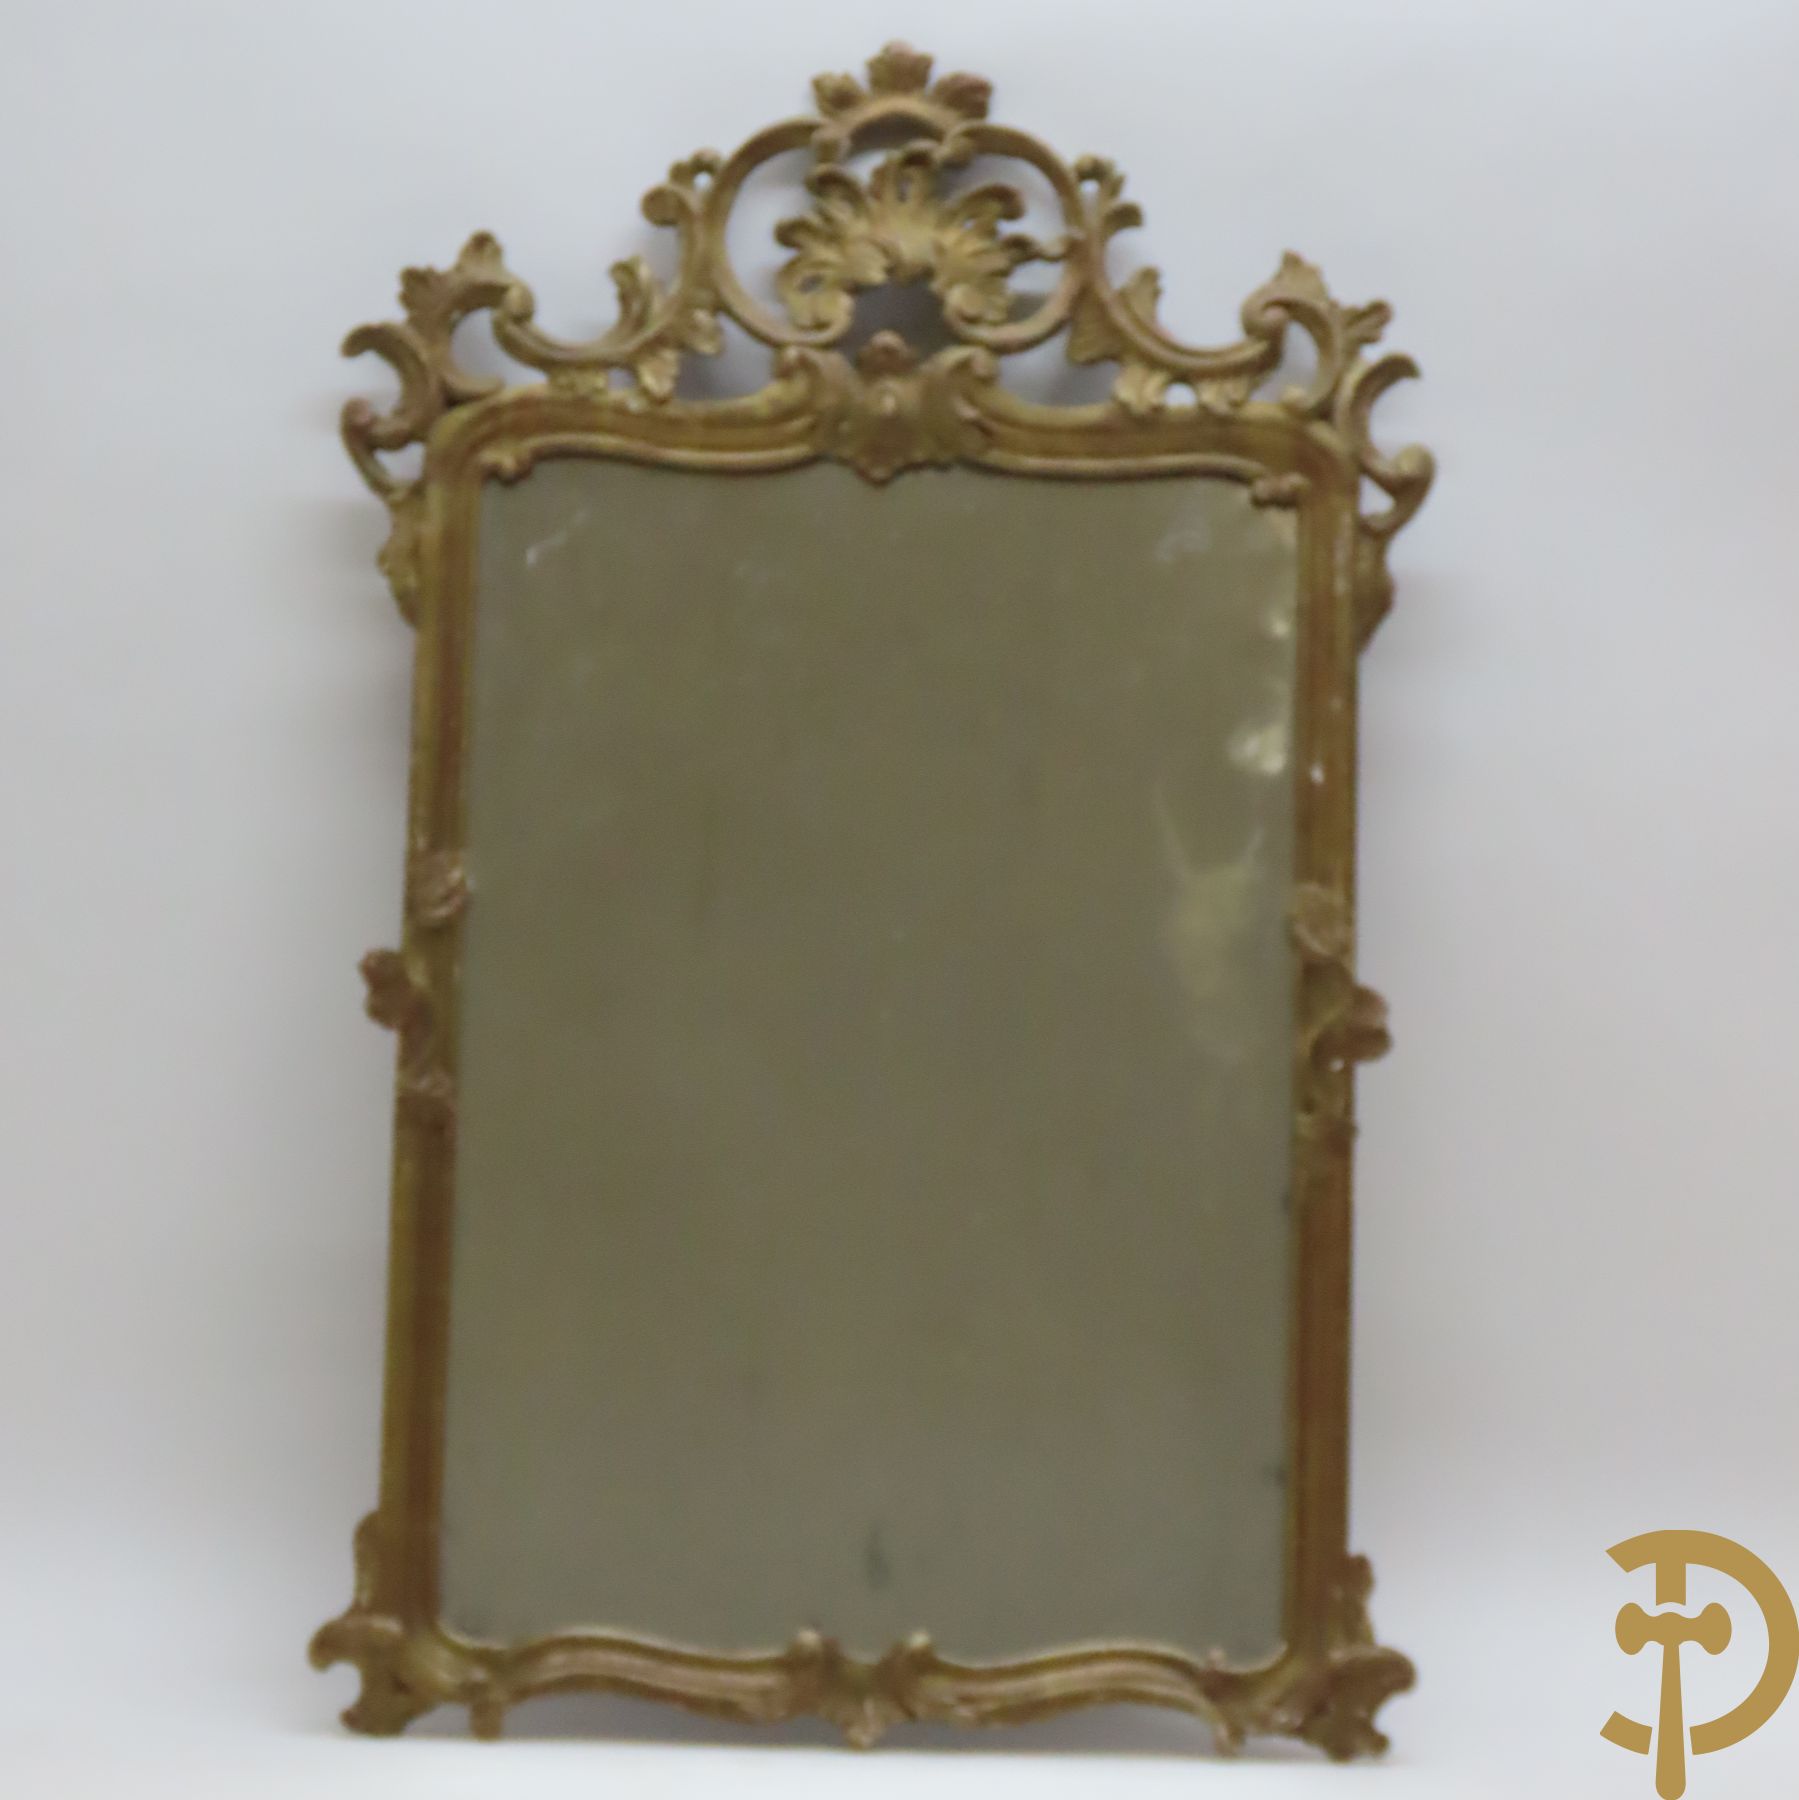 Houtgesculpteerde vergulde spiegel met Louis XV motieven, 19e